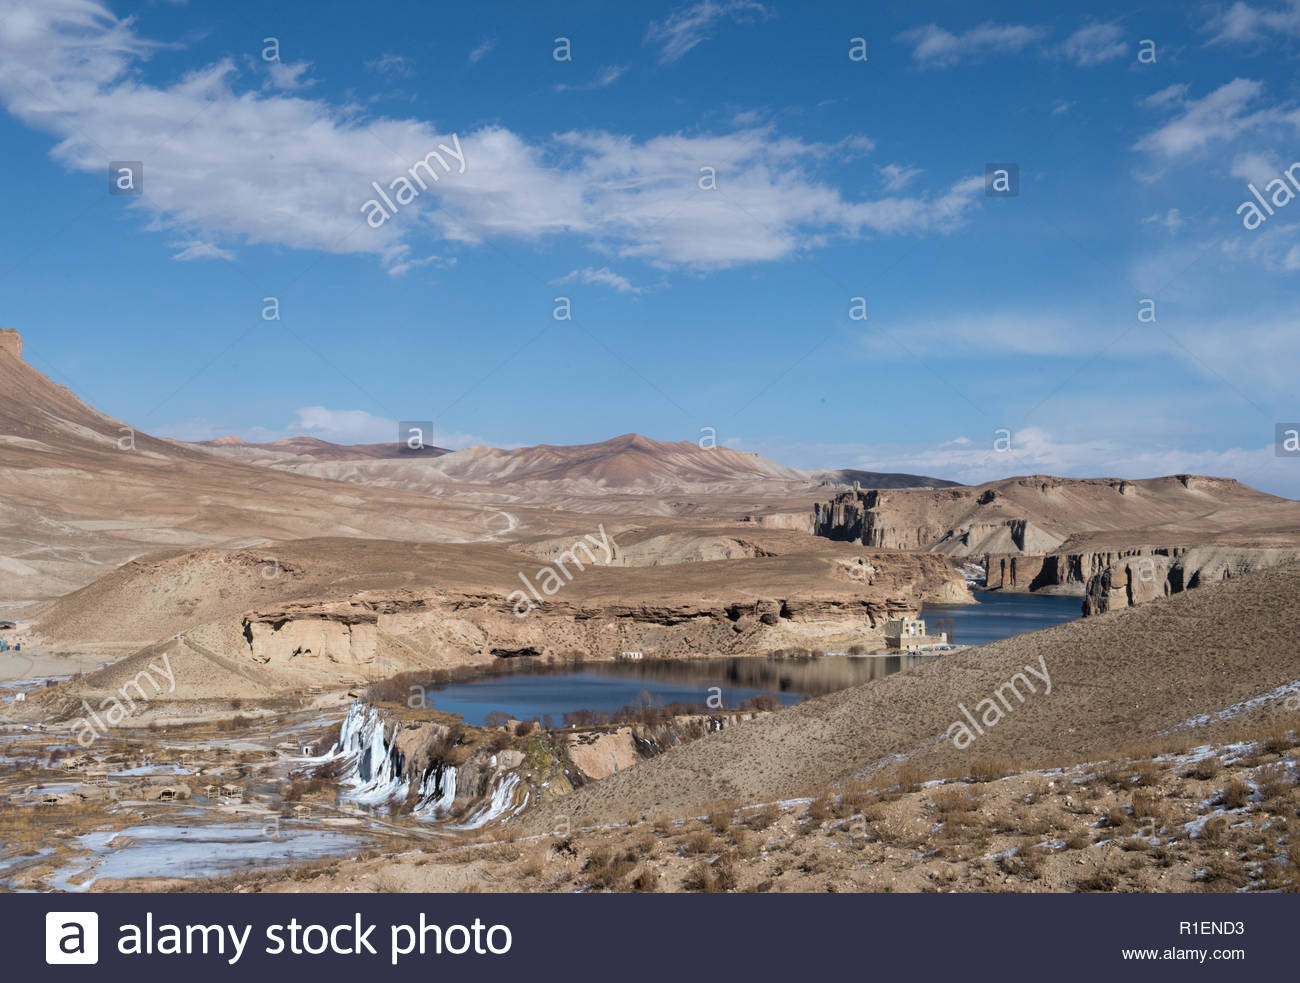 Band E Amir Stock Photos Image